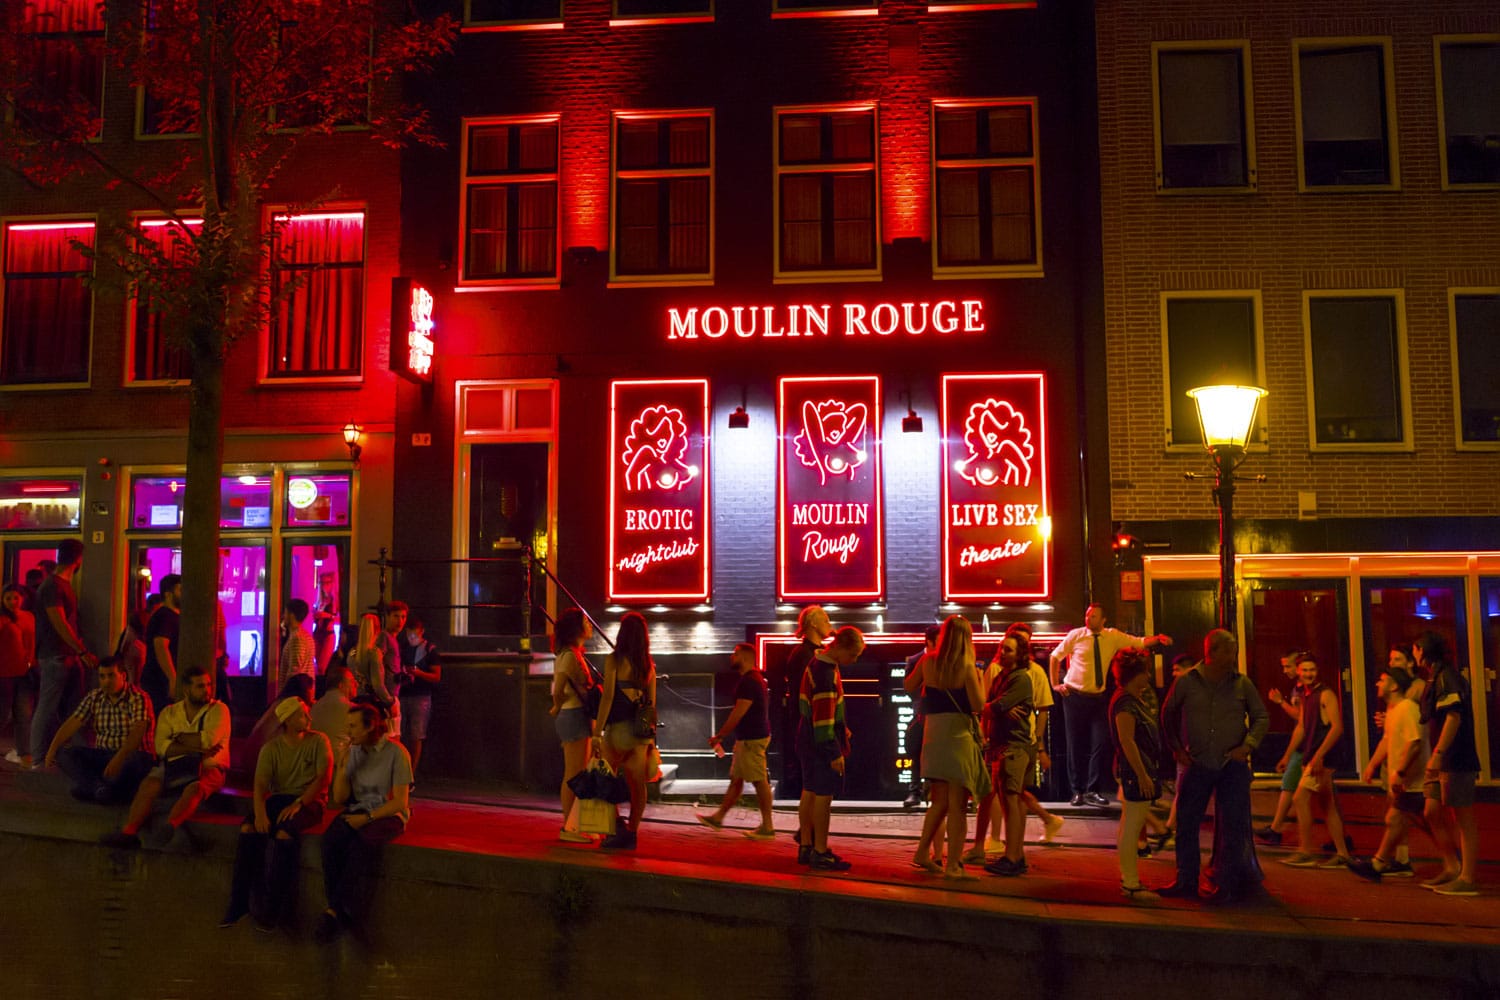 Moulin Rouge Bar dan toko seks di Amsterdam - distrik lampu merah